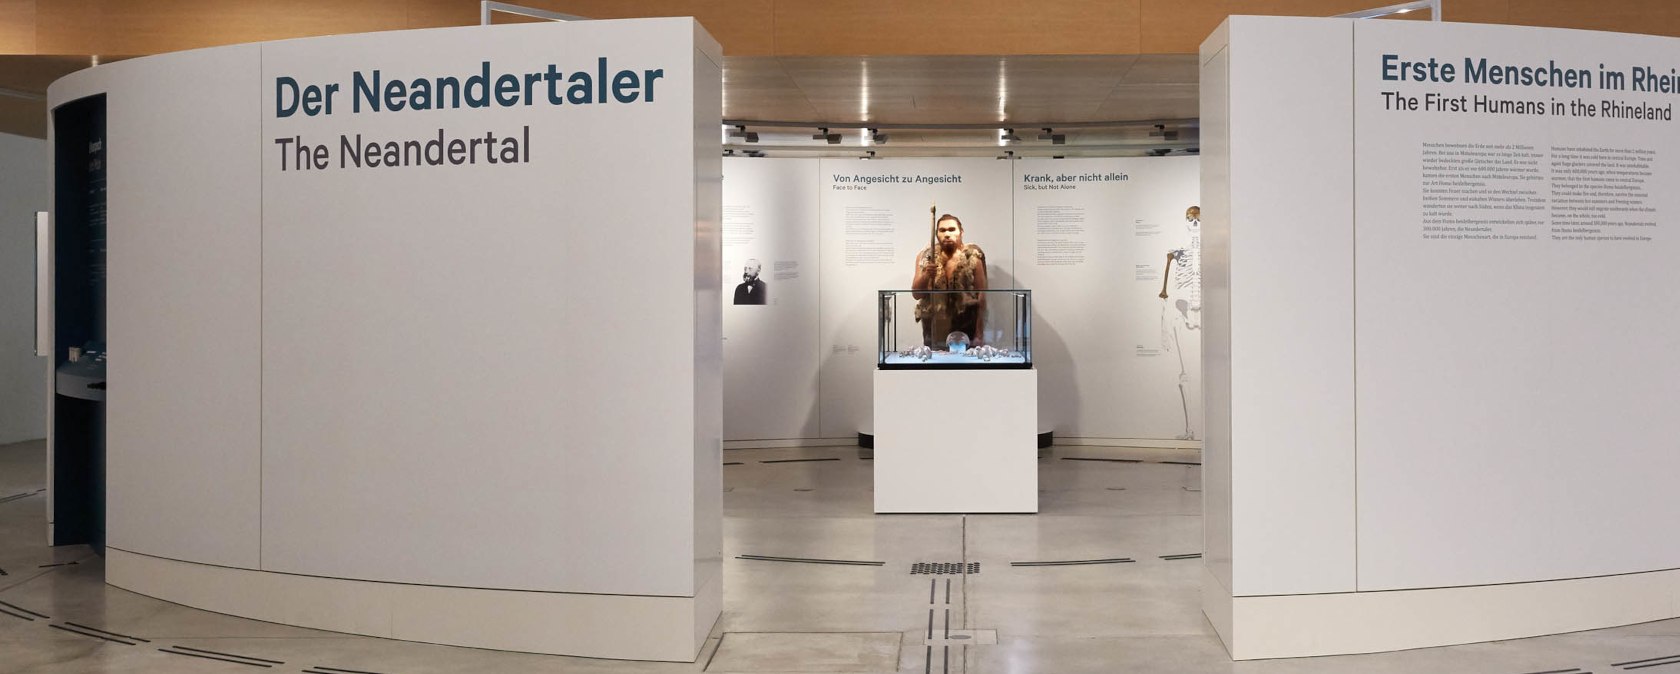 Gäste können sich dem weltberühmten Neandertaler in einer Rotunde im Museumsfoyer nähern, © Foto: J. Vogel, LVR-LandesMuseum Bonn.